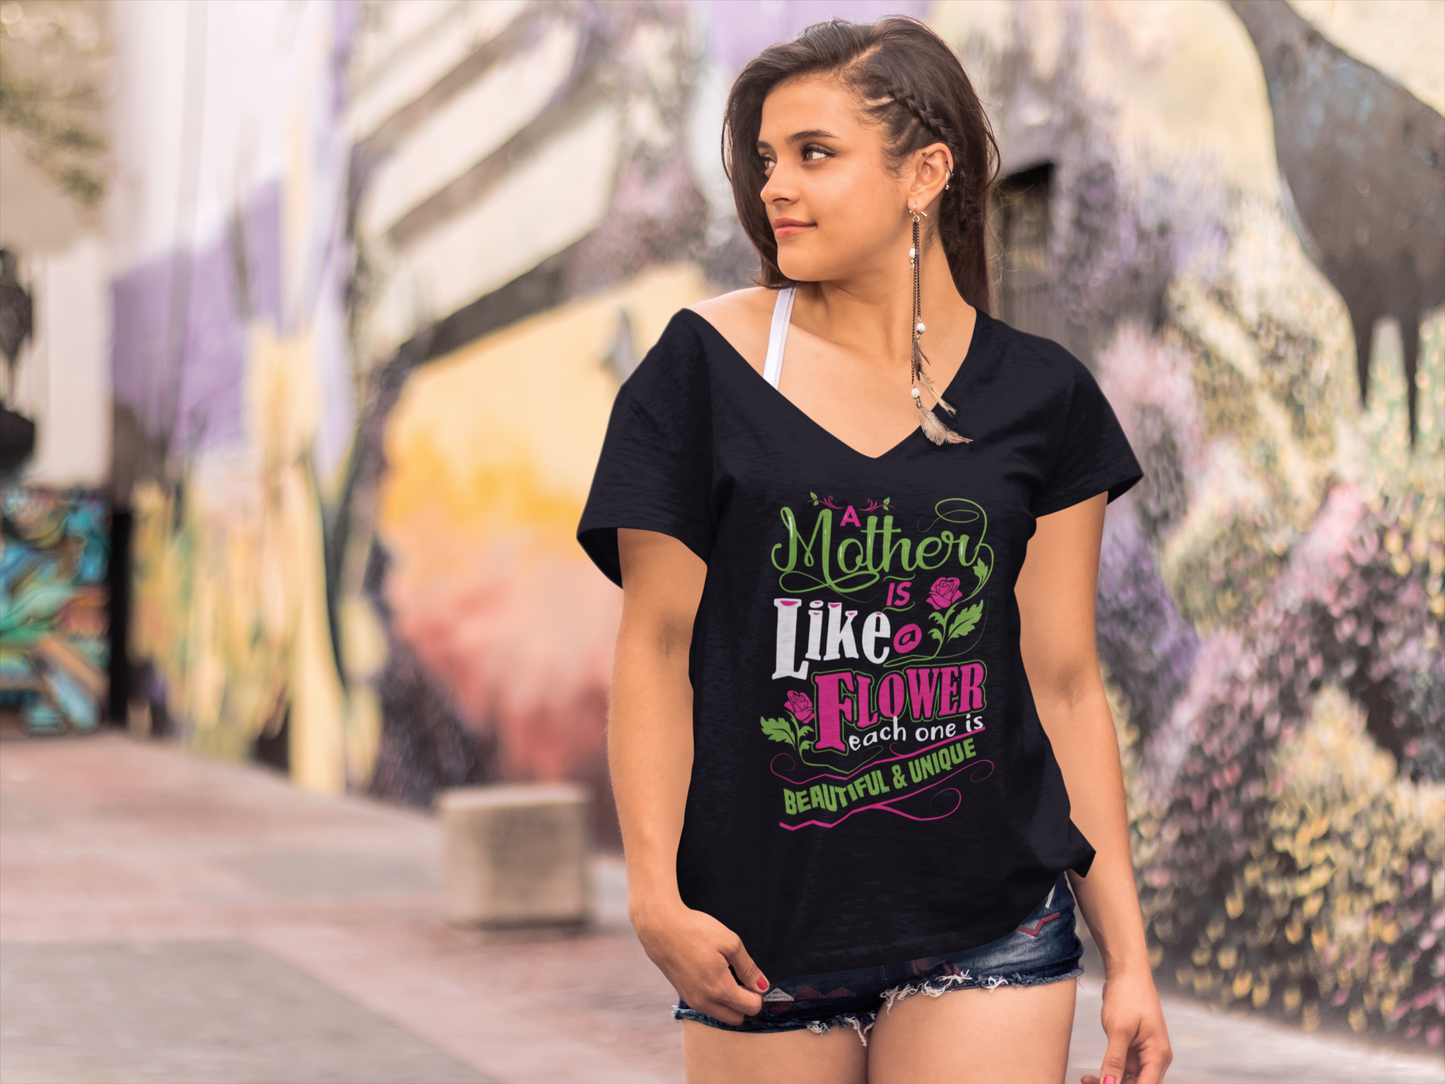 ULTRABASIC Women's Novelty T-Shirt A Mother is Like a Flower - Short Sleeve Tee Shirt Tops